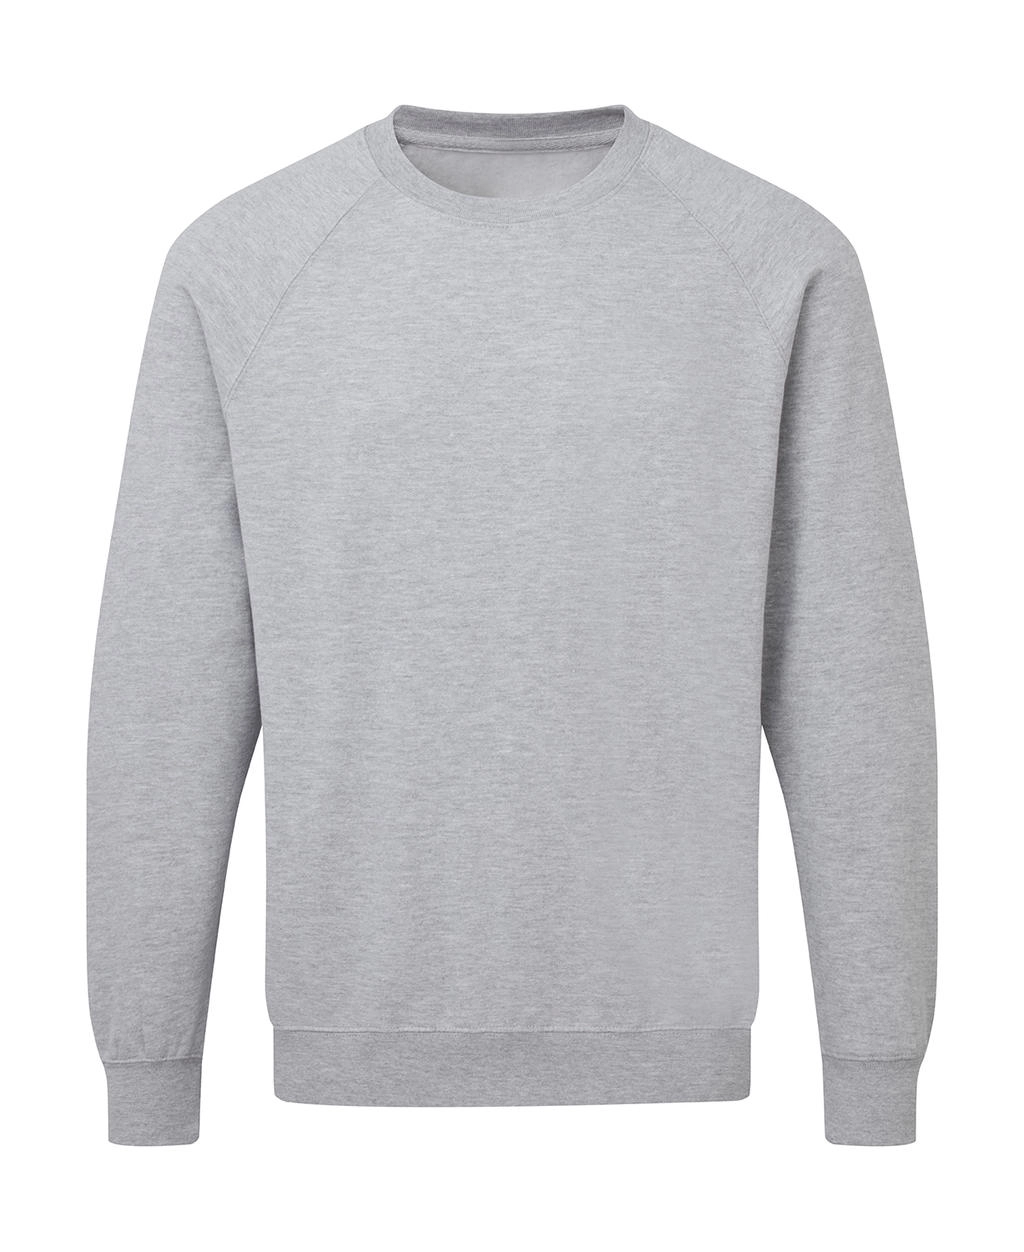 Raglan Sweatshirt Men zum Besticken und Bedrucken in der Farbe Light Oxford mit Ihren Logo, Schriftzug oder Motiv.